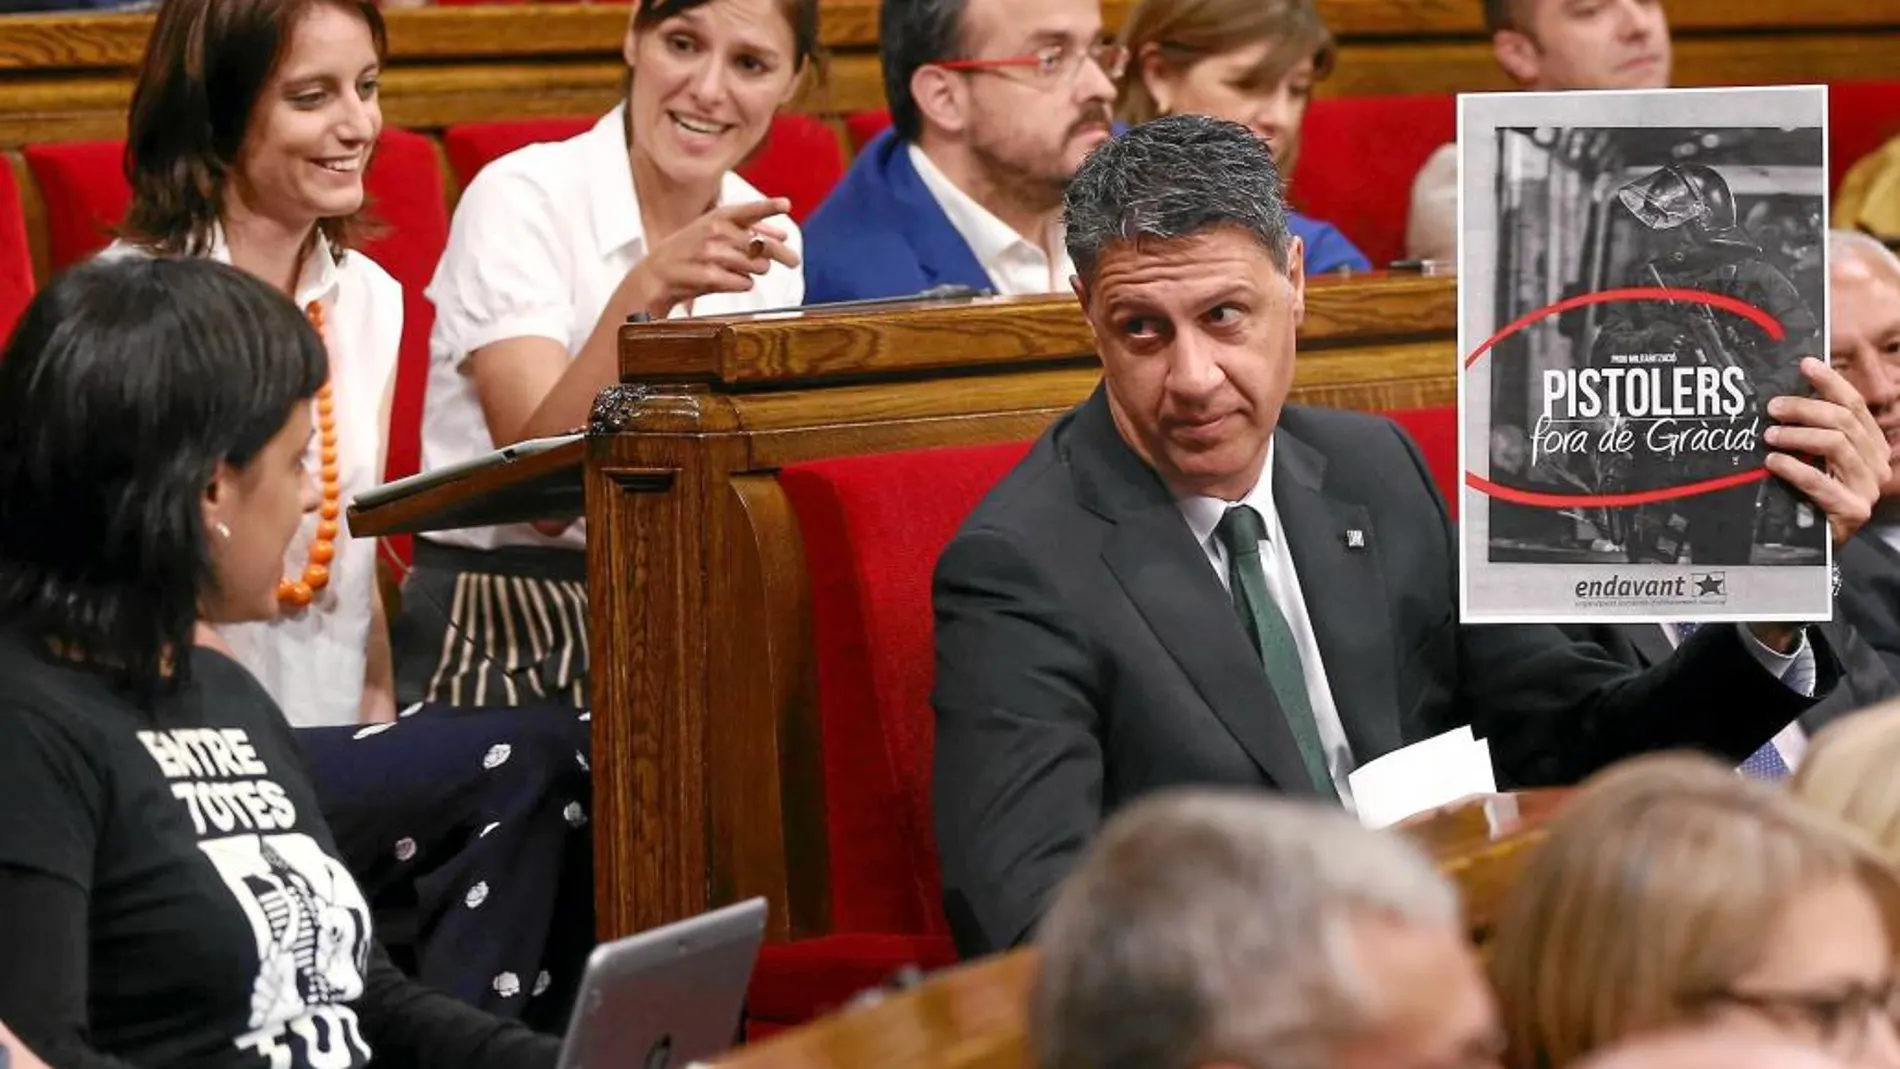 Albiol mostró ayer en el Parlament un cartel de Endavant (una organización integrada en la CUP) en el que se acusa a los Mossos d’Esquadra de «Pistoleros». «Fuera de Gràcia», se puede leer también